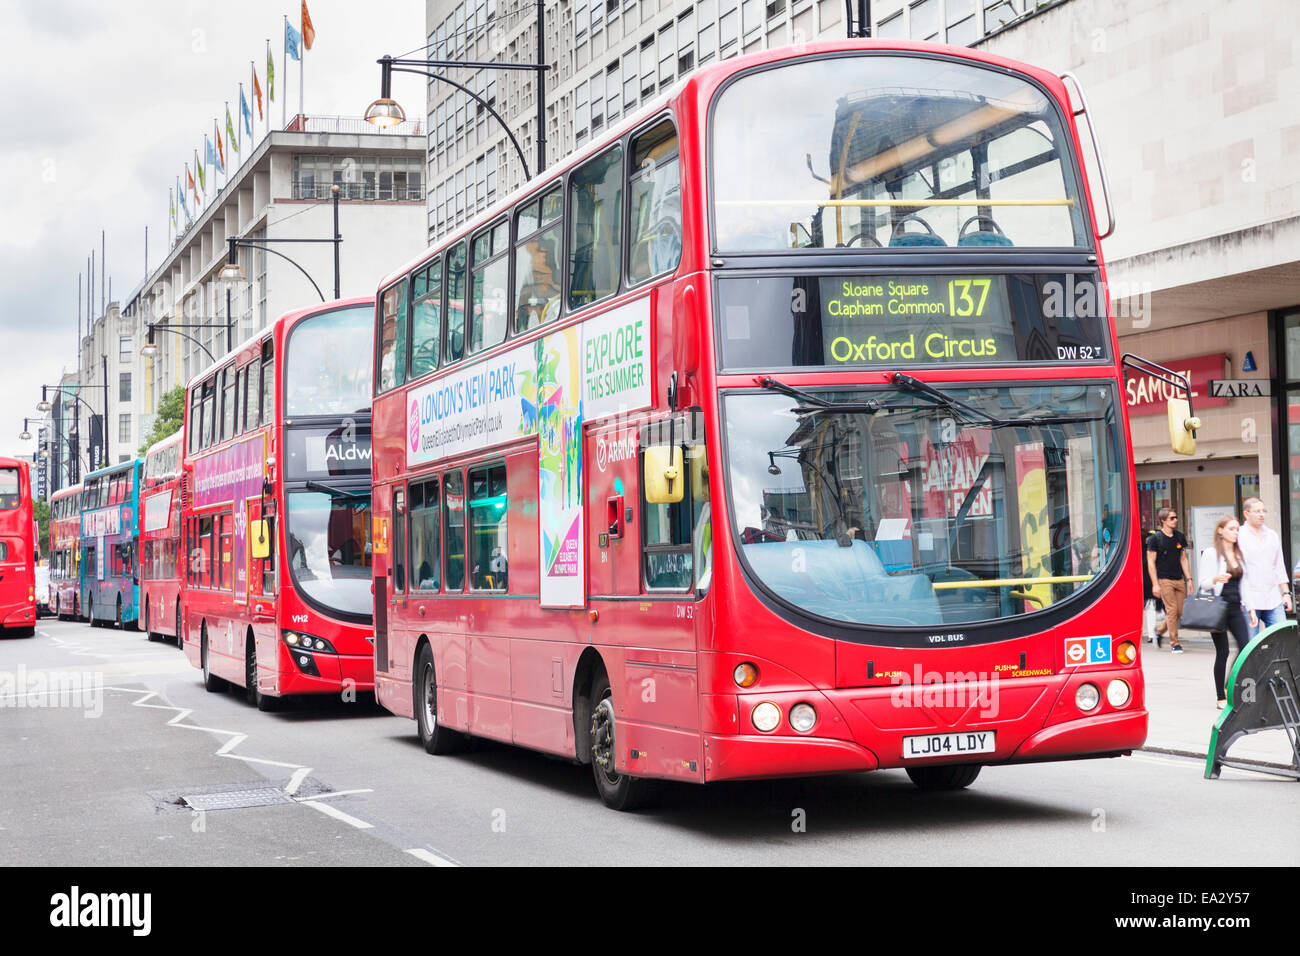 Bus à impériale rouge sur Oxford Street, Londres, Angleterre, Royaume-Uni, Europe Banque D'Images